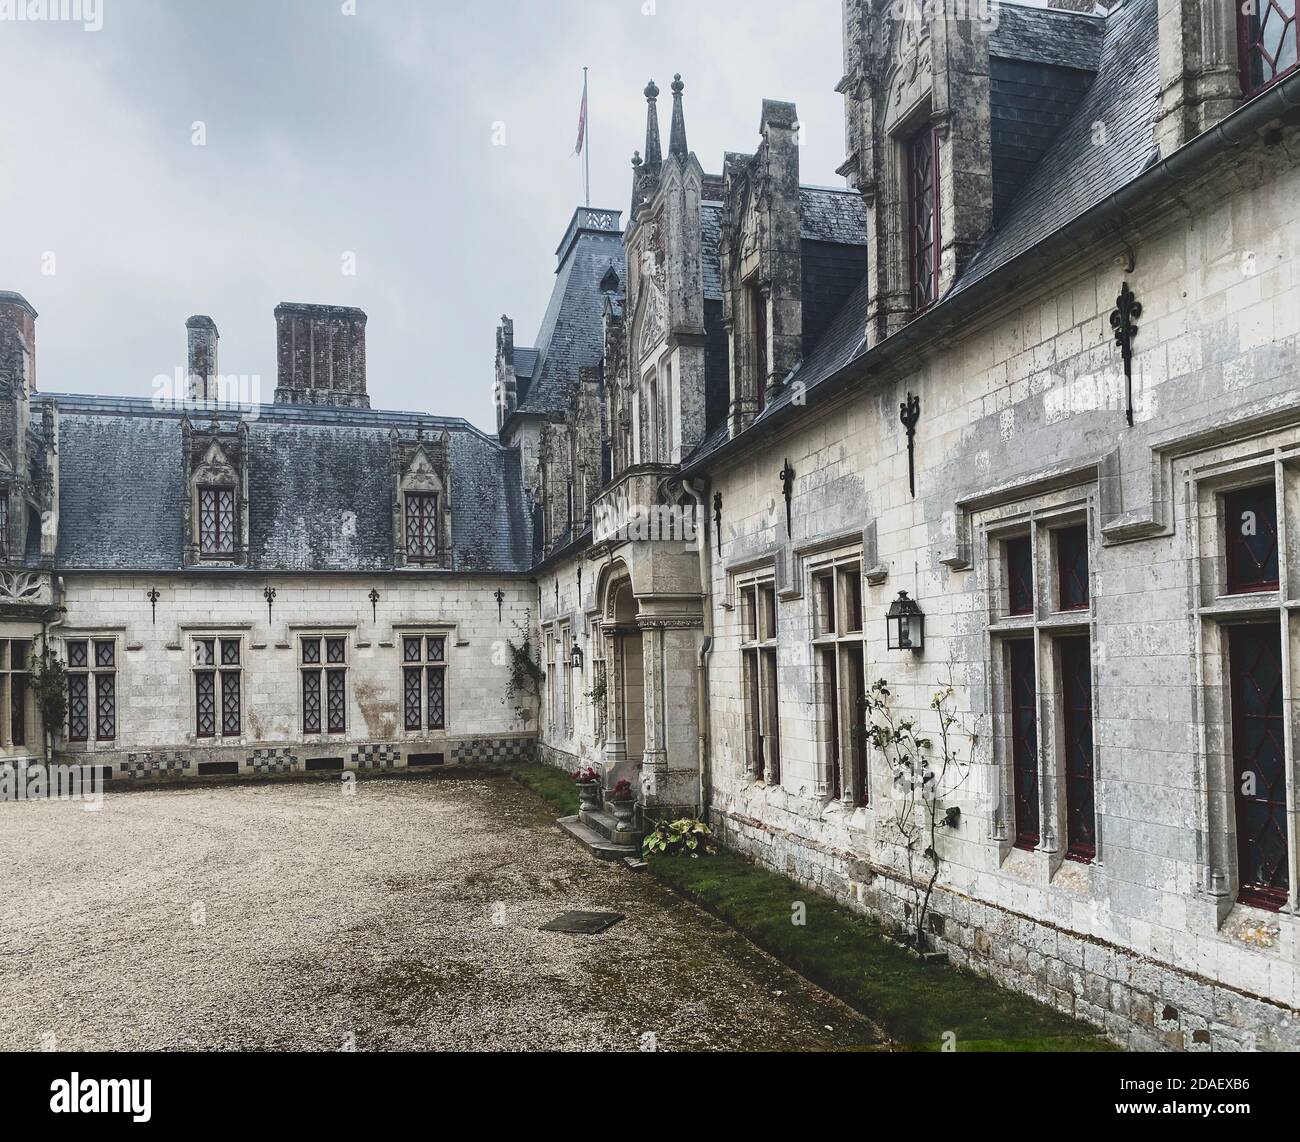 Prestigieux château néo-gothique de Regniere-Ecluse dans le département de la somme en France, en picardie Banque D'Images